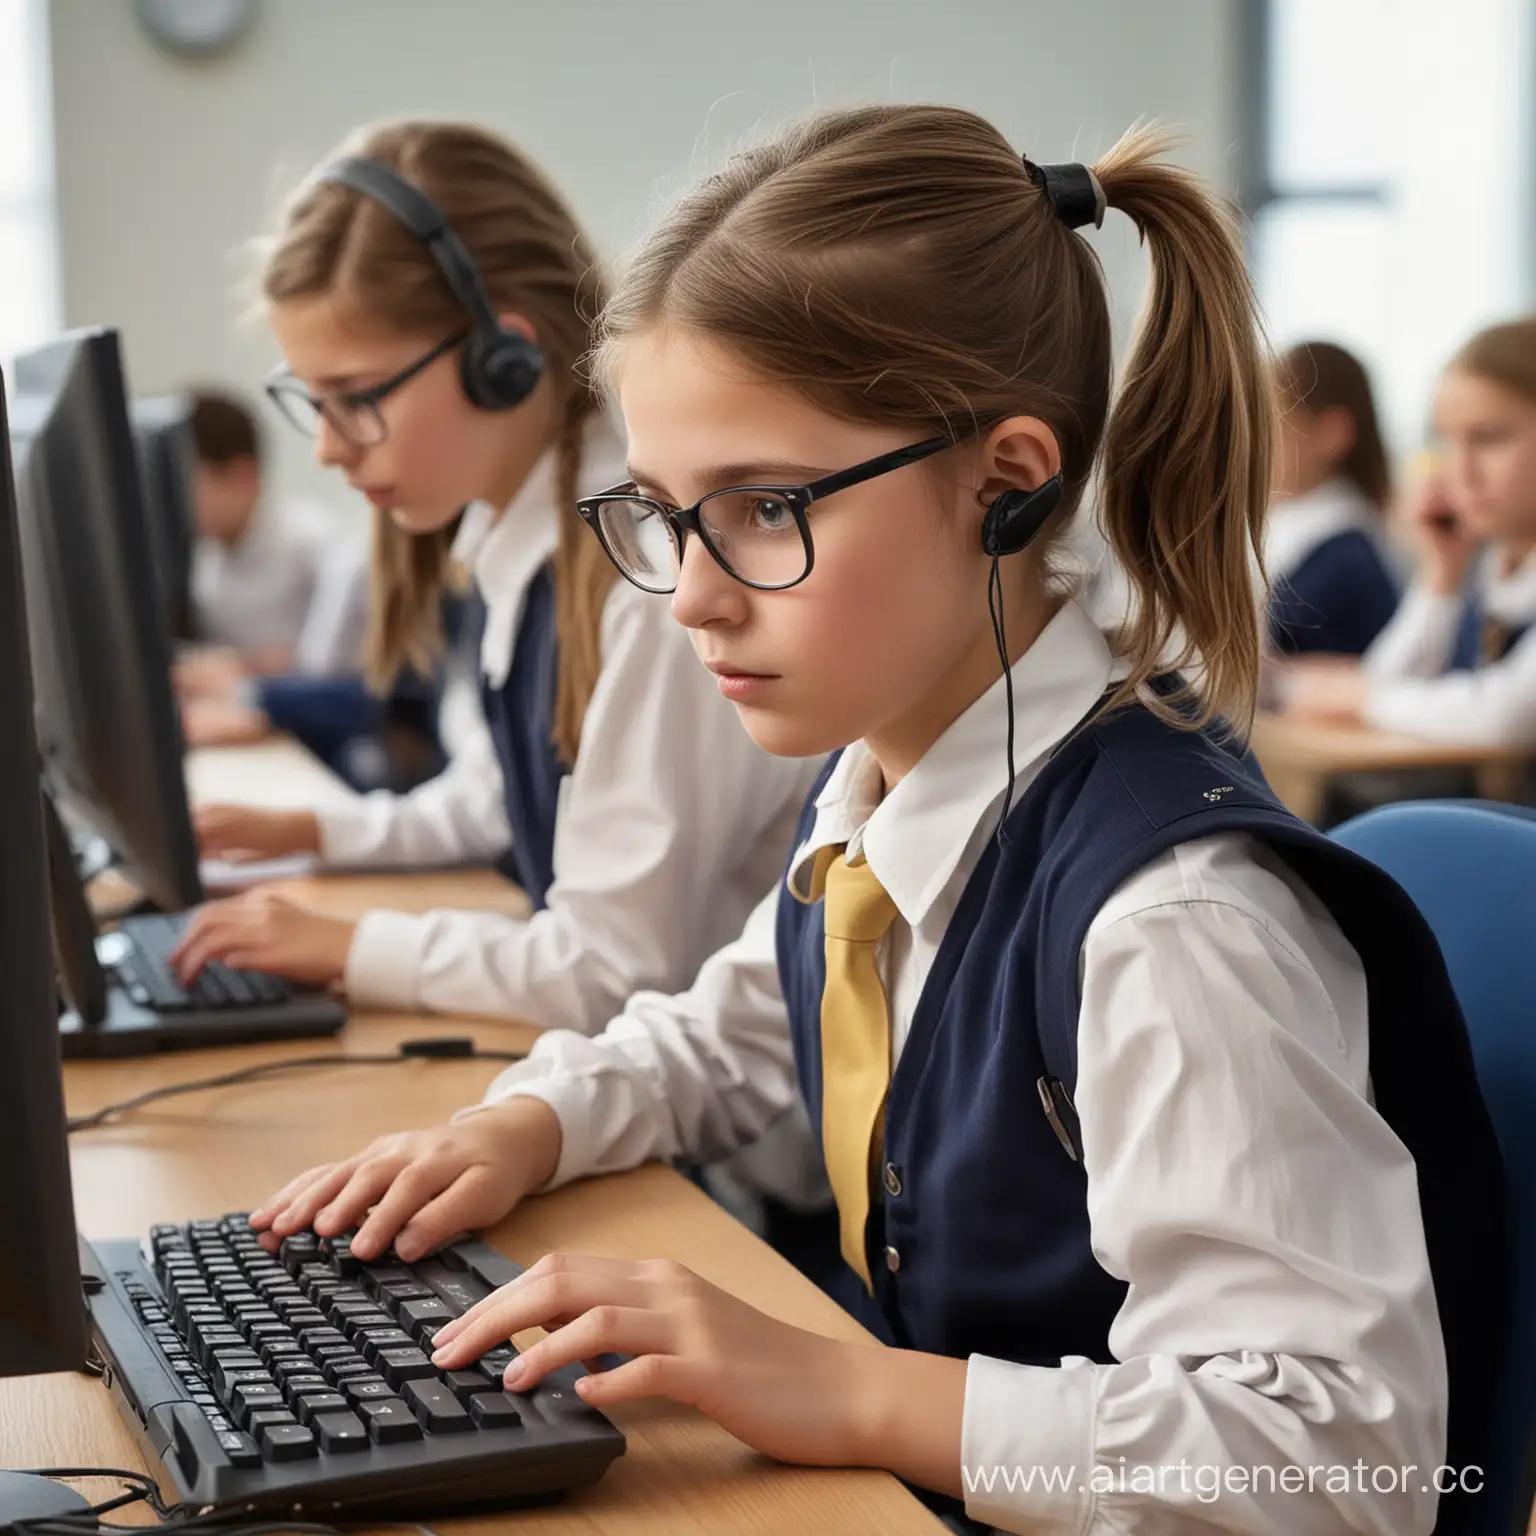 Вредно за компьютерам работать 
школьники